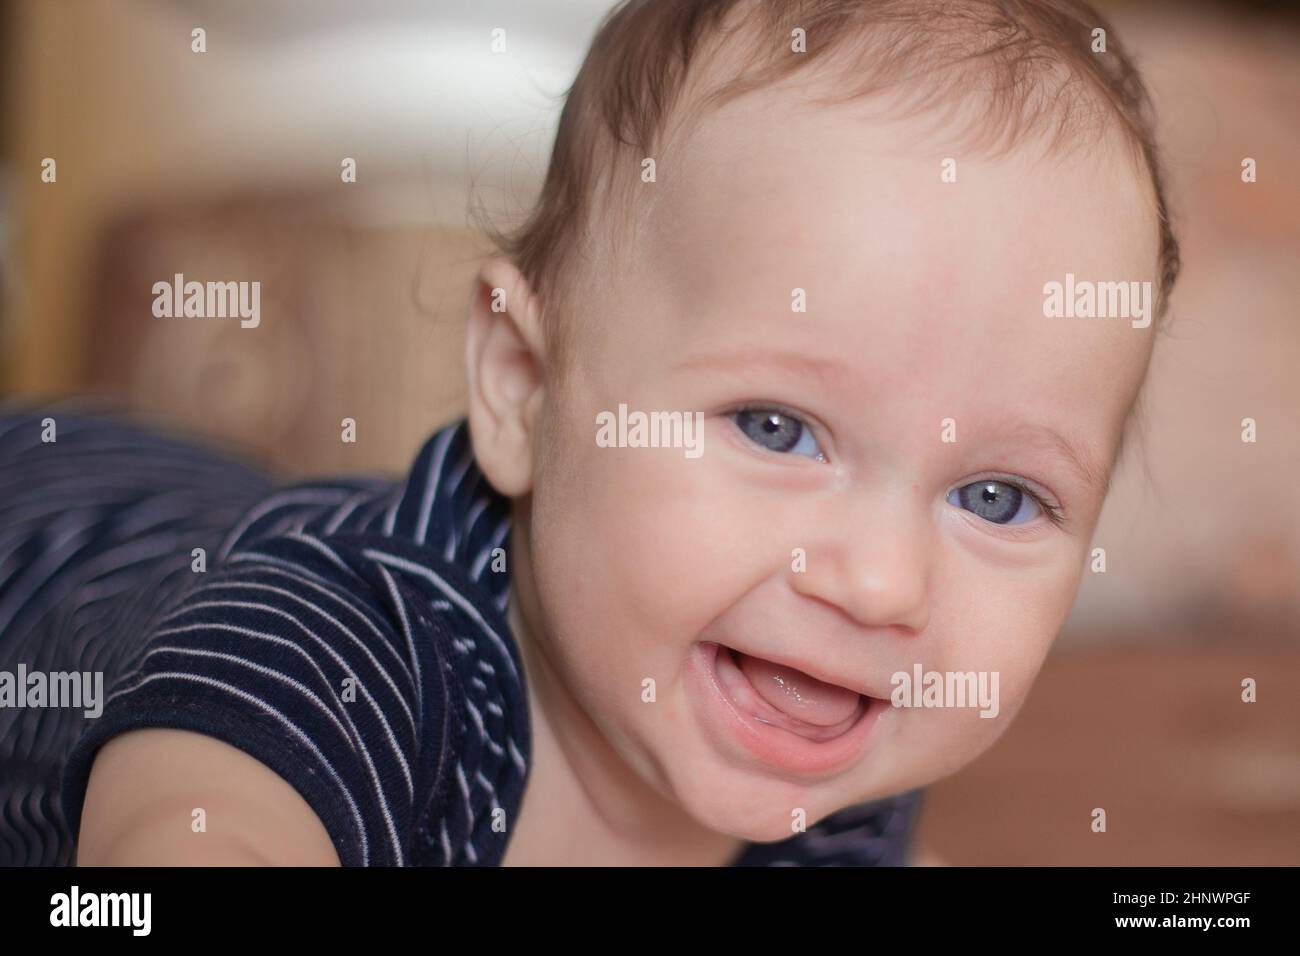 Un enfant sans dents avec de beaux yeux bleus et un front élevé d'apparence caucasienne se trouve sur son ventre et rit dans la caméra dans le dos flou Banque D'Images